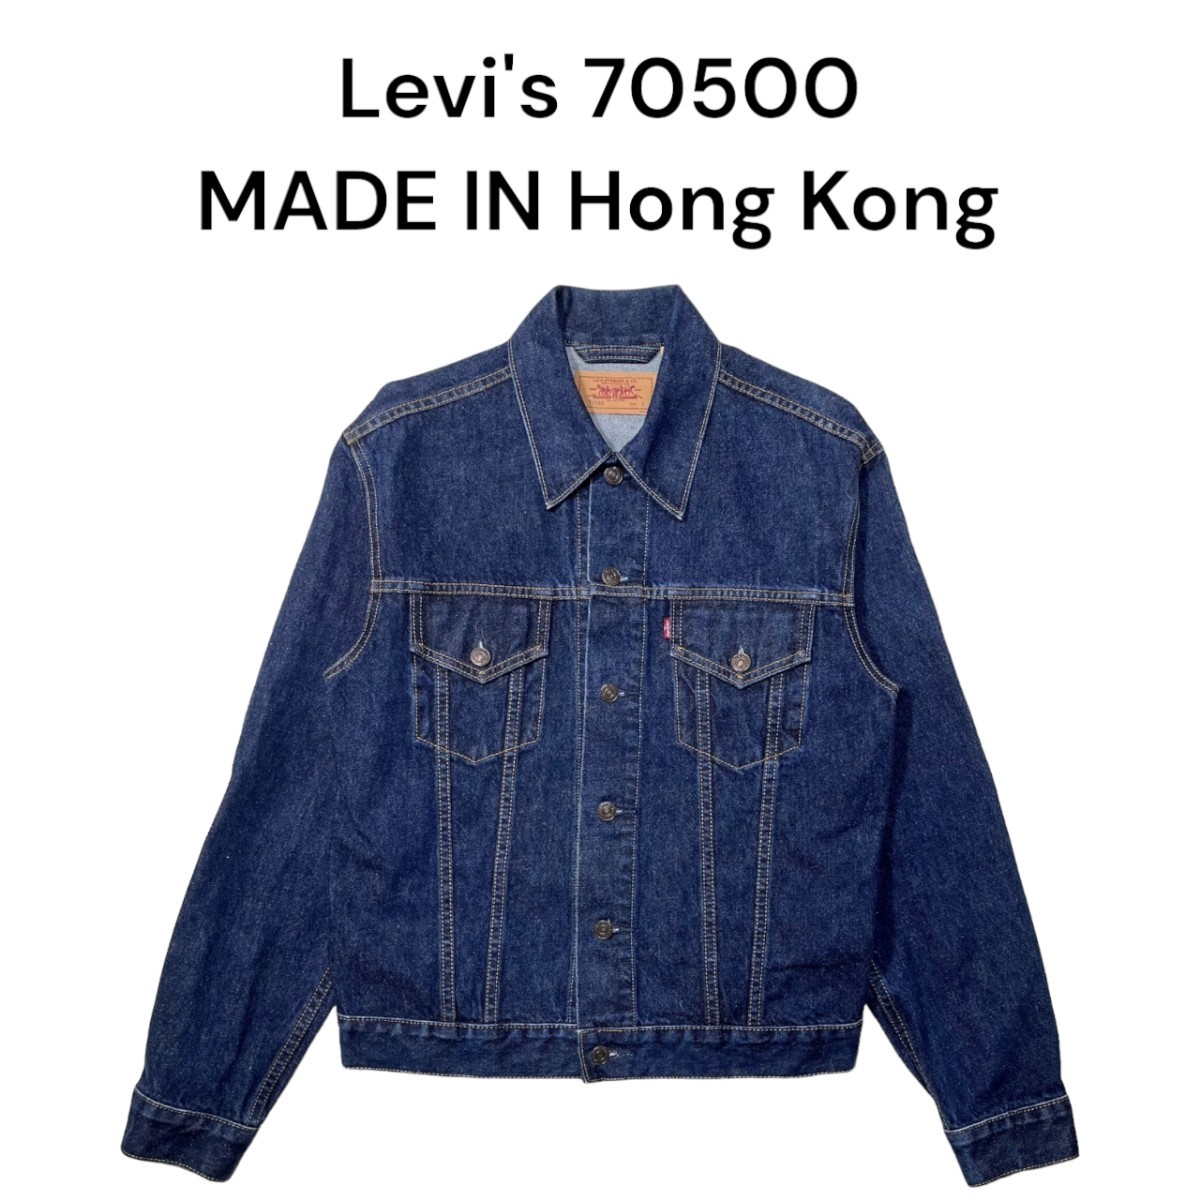 超可爱の 香港製 90s デニムジャケット Gジャン リーバイス Levis70500